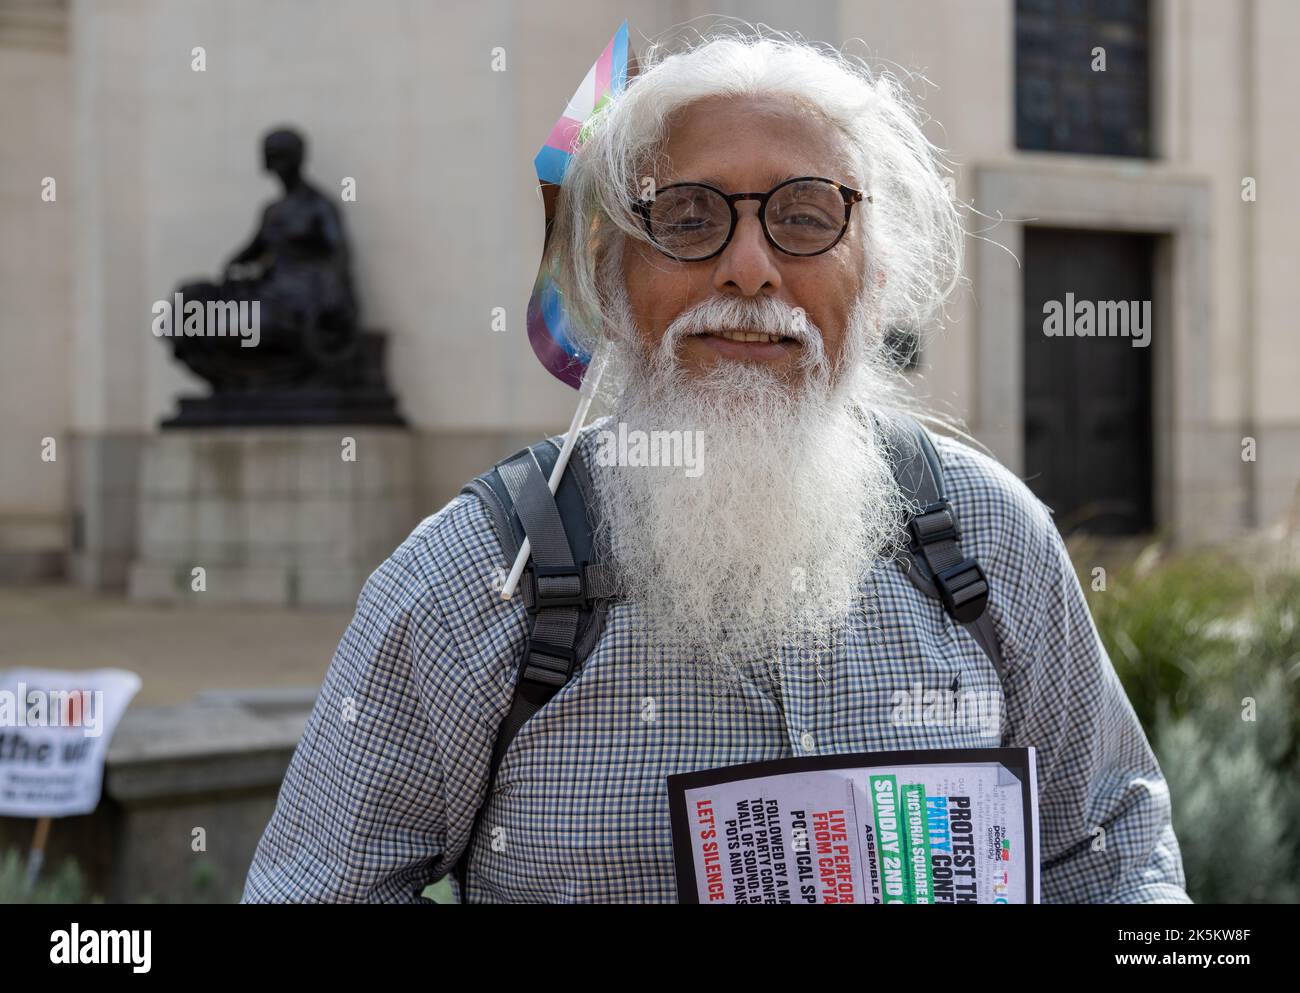 Un sostenitore dell'Assemblea popolare appoggia la protesta contro la conferenza del Partito conservatore a Birmingham. Un uomo con lunghi capelli bianchi e barba. Foto Stock